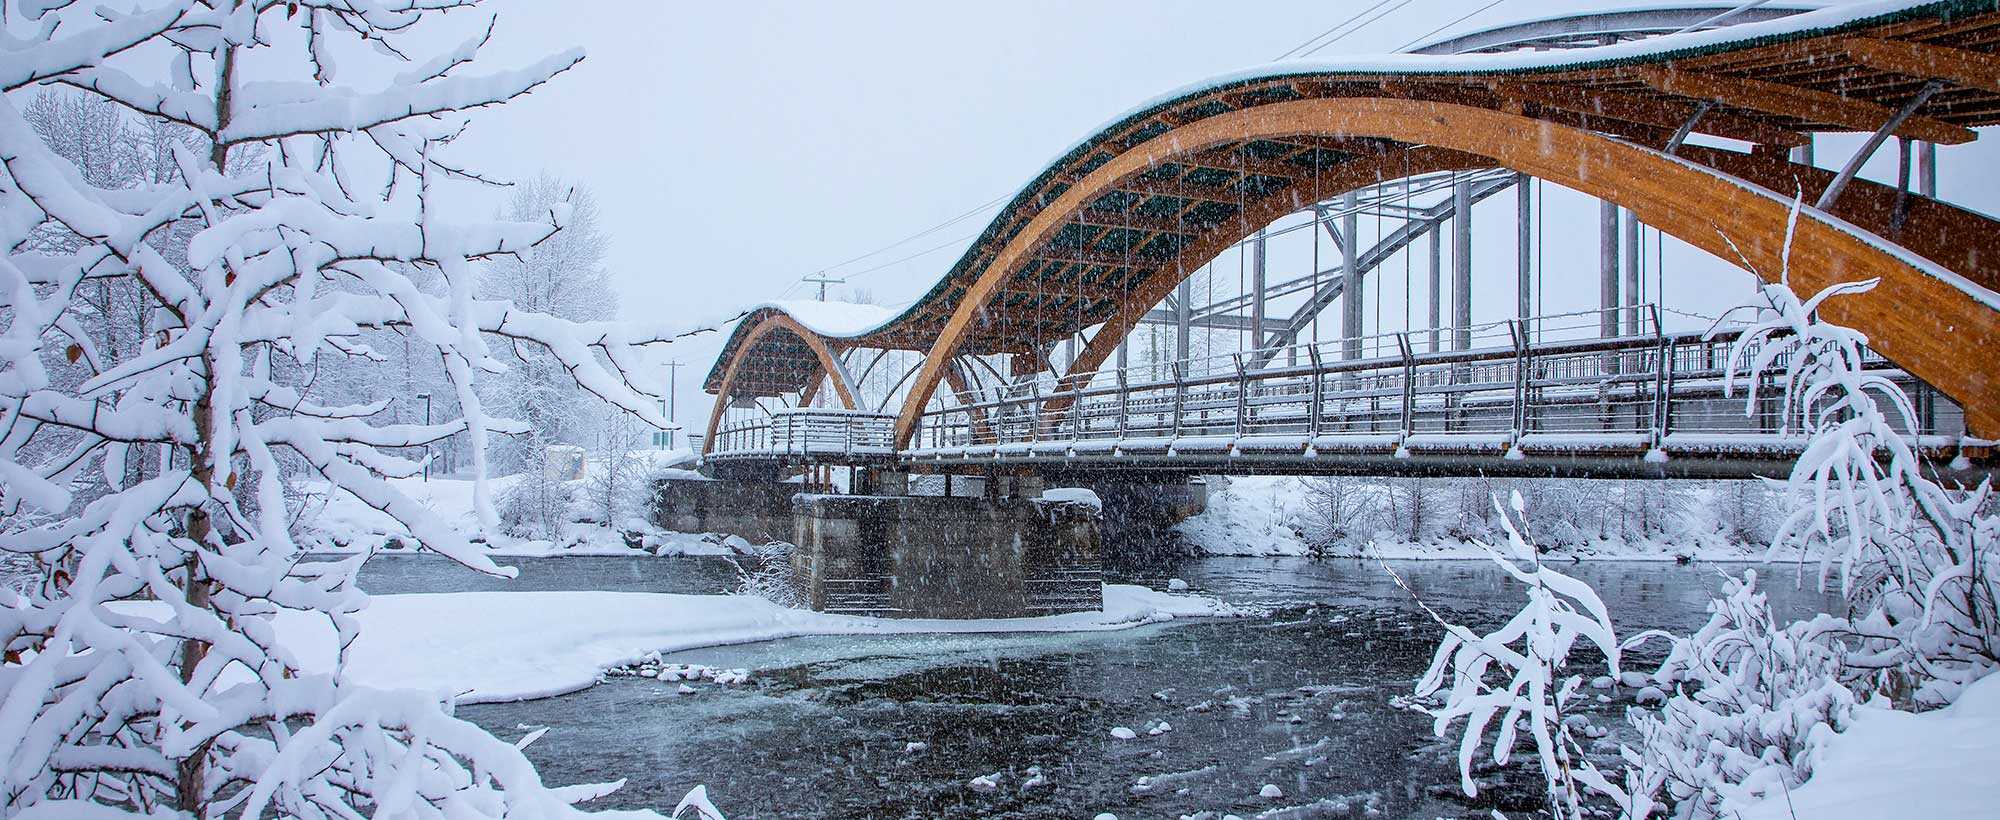 Bridge in snow